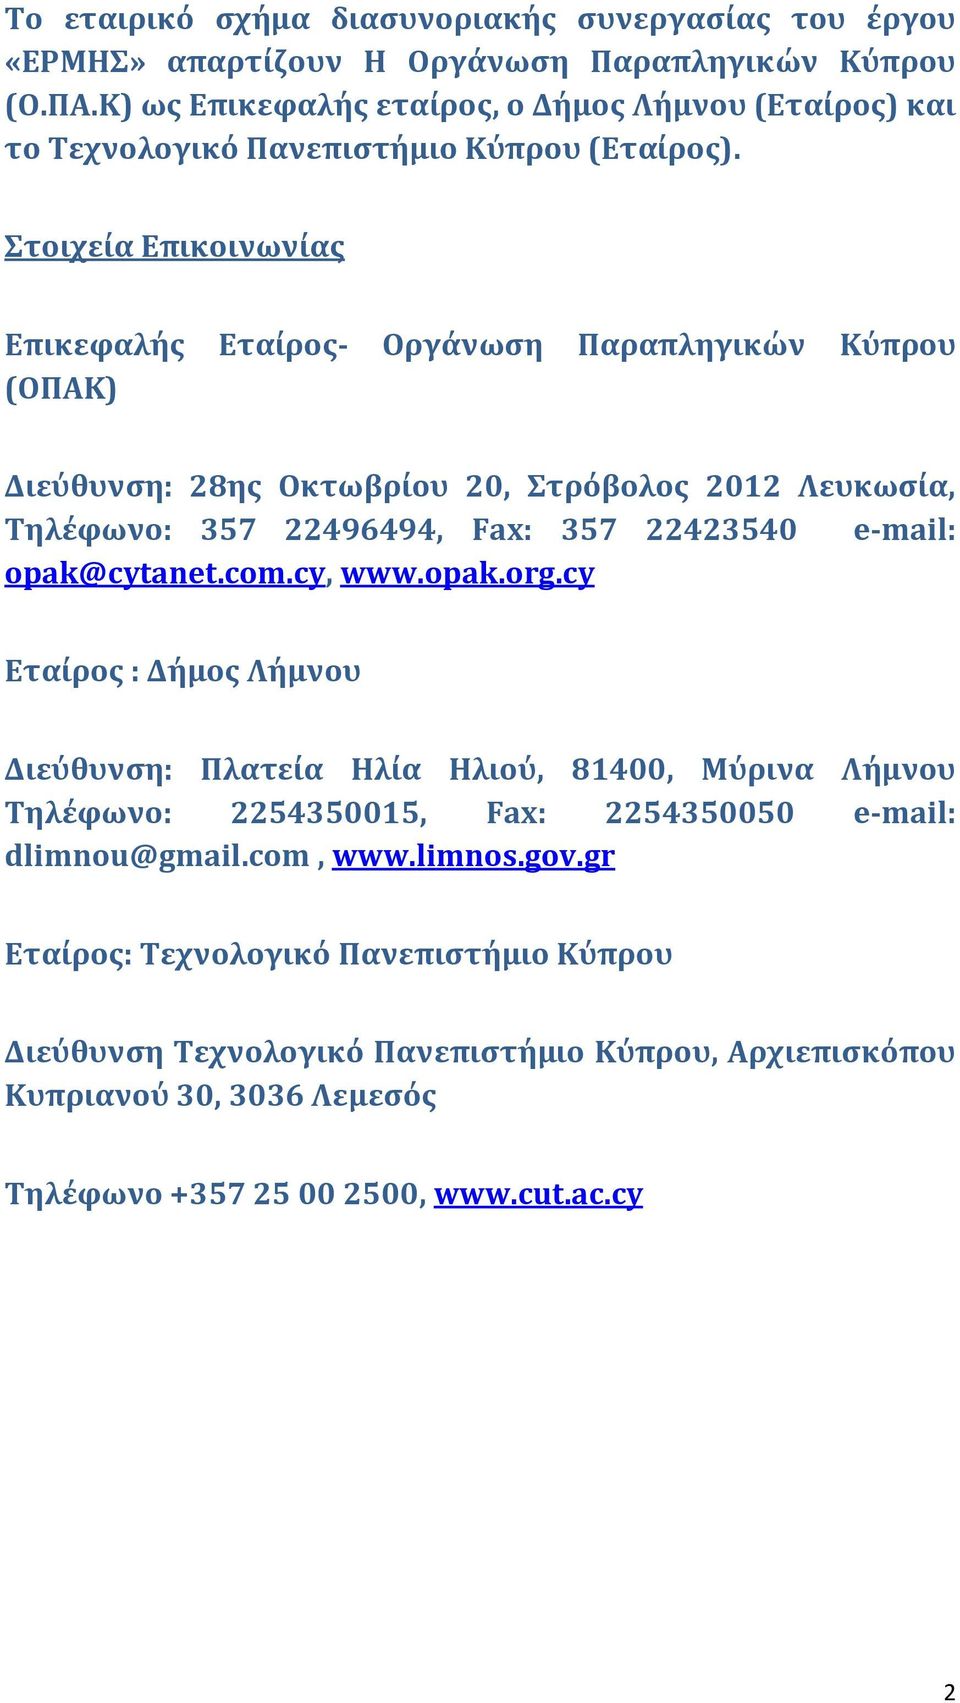 τοιχεύα Επικοινωνύασ Επικεφαλόσ Εταύροσ- Οργϊνωςη Παραπληγικών Κύπρου (ΟΠΑΚ) Διεύθυνςη: 28ησ Οκτωβρύου 20, τρόβολοσ 2012 Λευκωςύα, Σηλϋφωνο: 357 22496494, Fax: 357 22423540 e-mail: